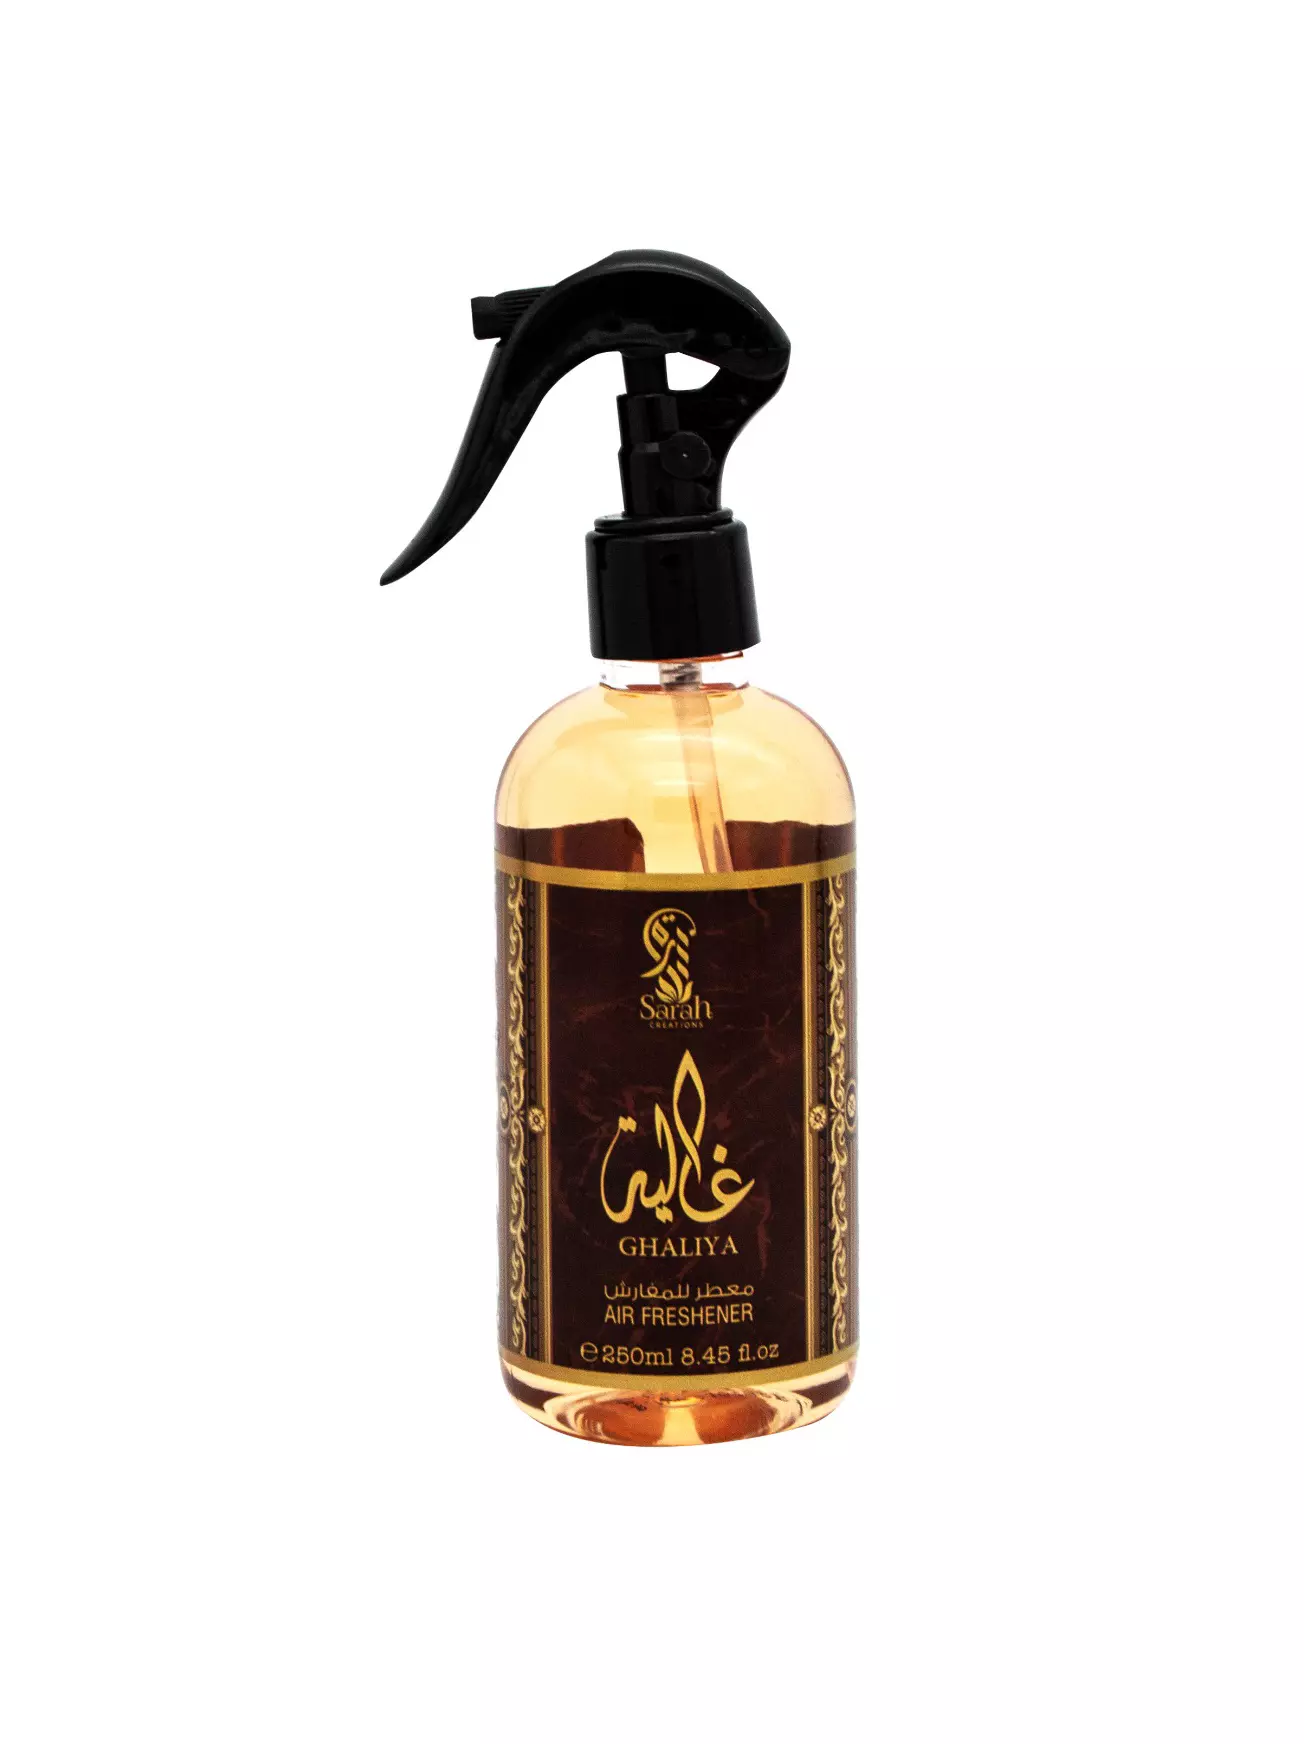 Ghalia Textilerfrischer 250ml von Myperfumes – Ramadan24 Orient Shop